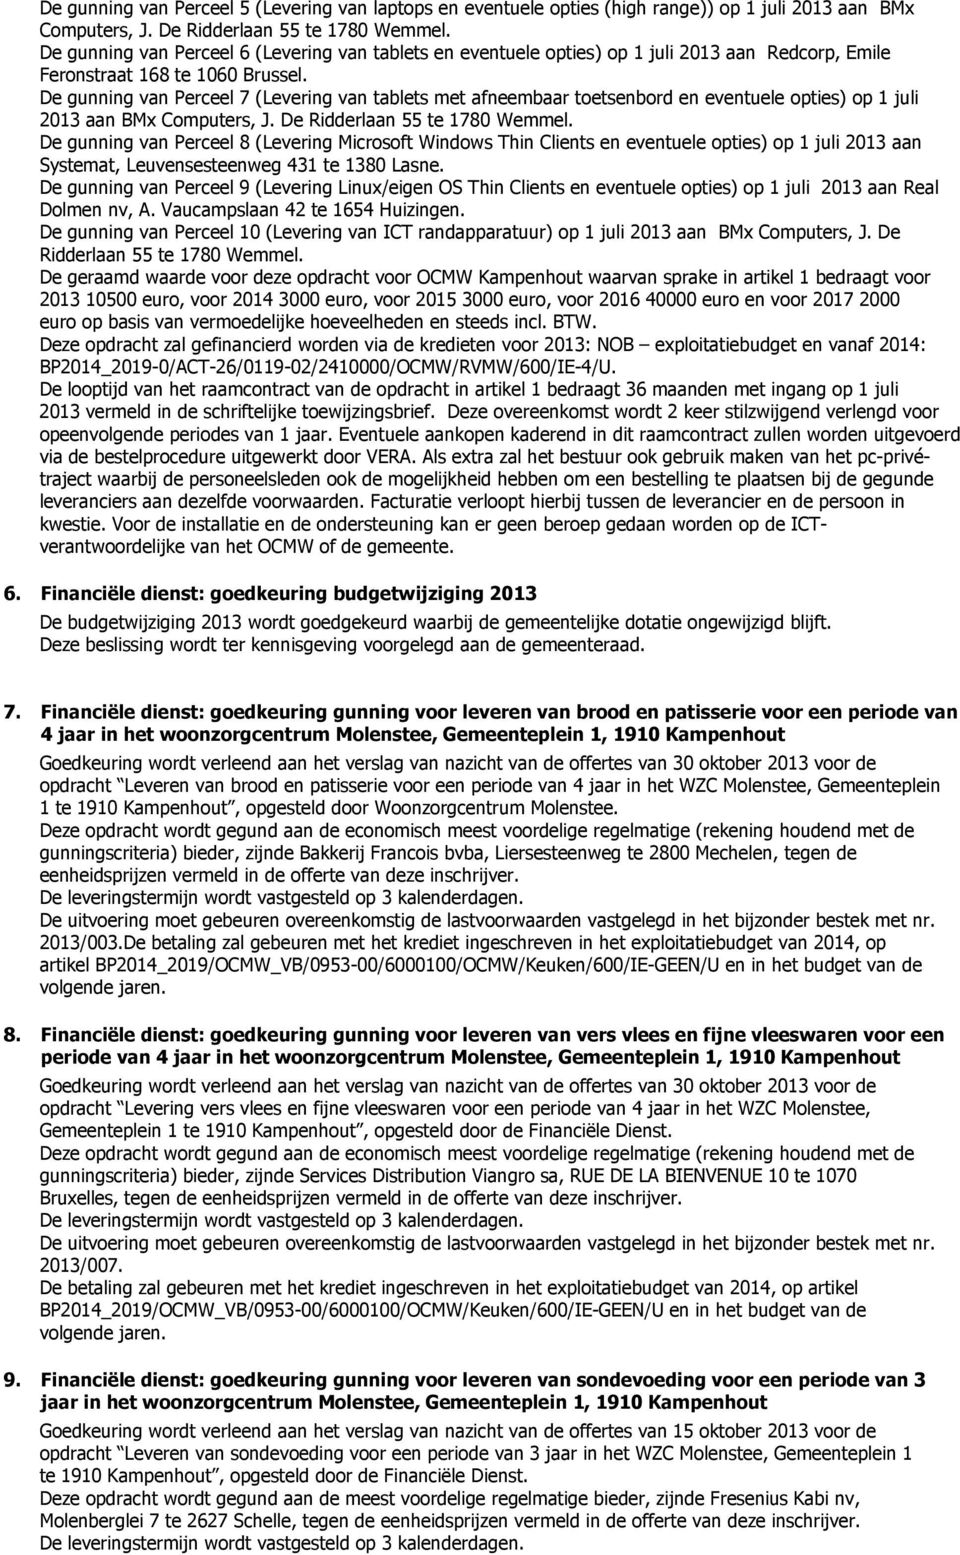 De gunning van Perceel 7 (Levering van tablets met afneembaar toetsenbord en eventuele opties) op 1 juli 2013 aan BMx Computers, J. De Ridderlaan 55 te 1780 Wemmel.